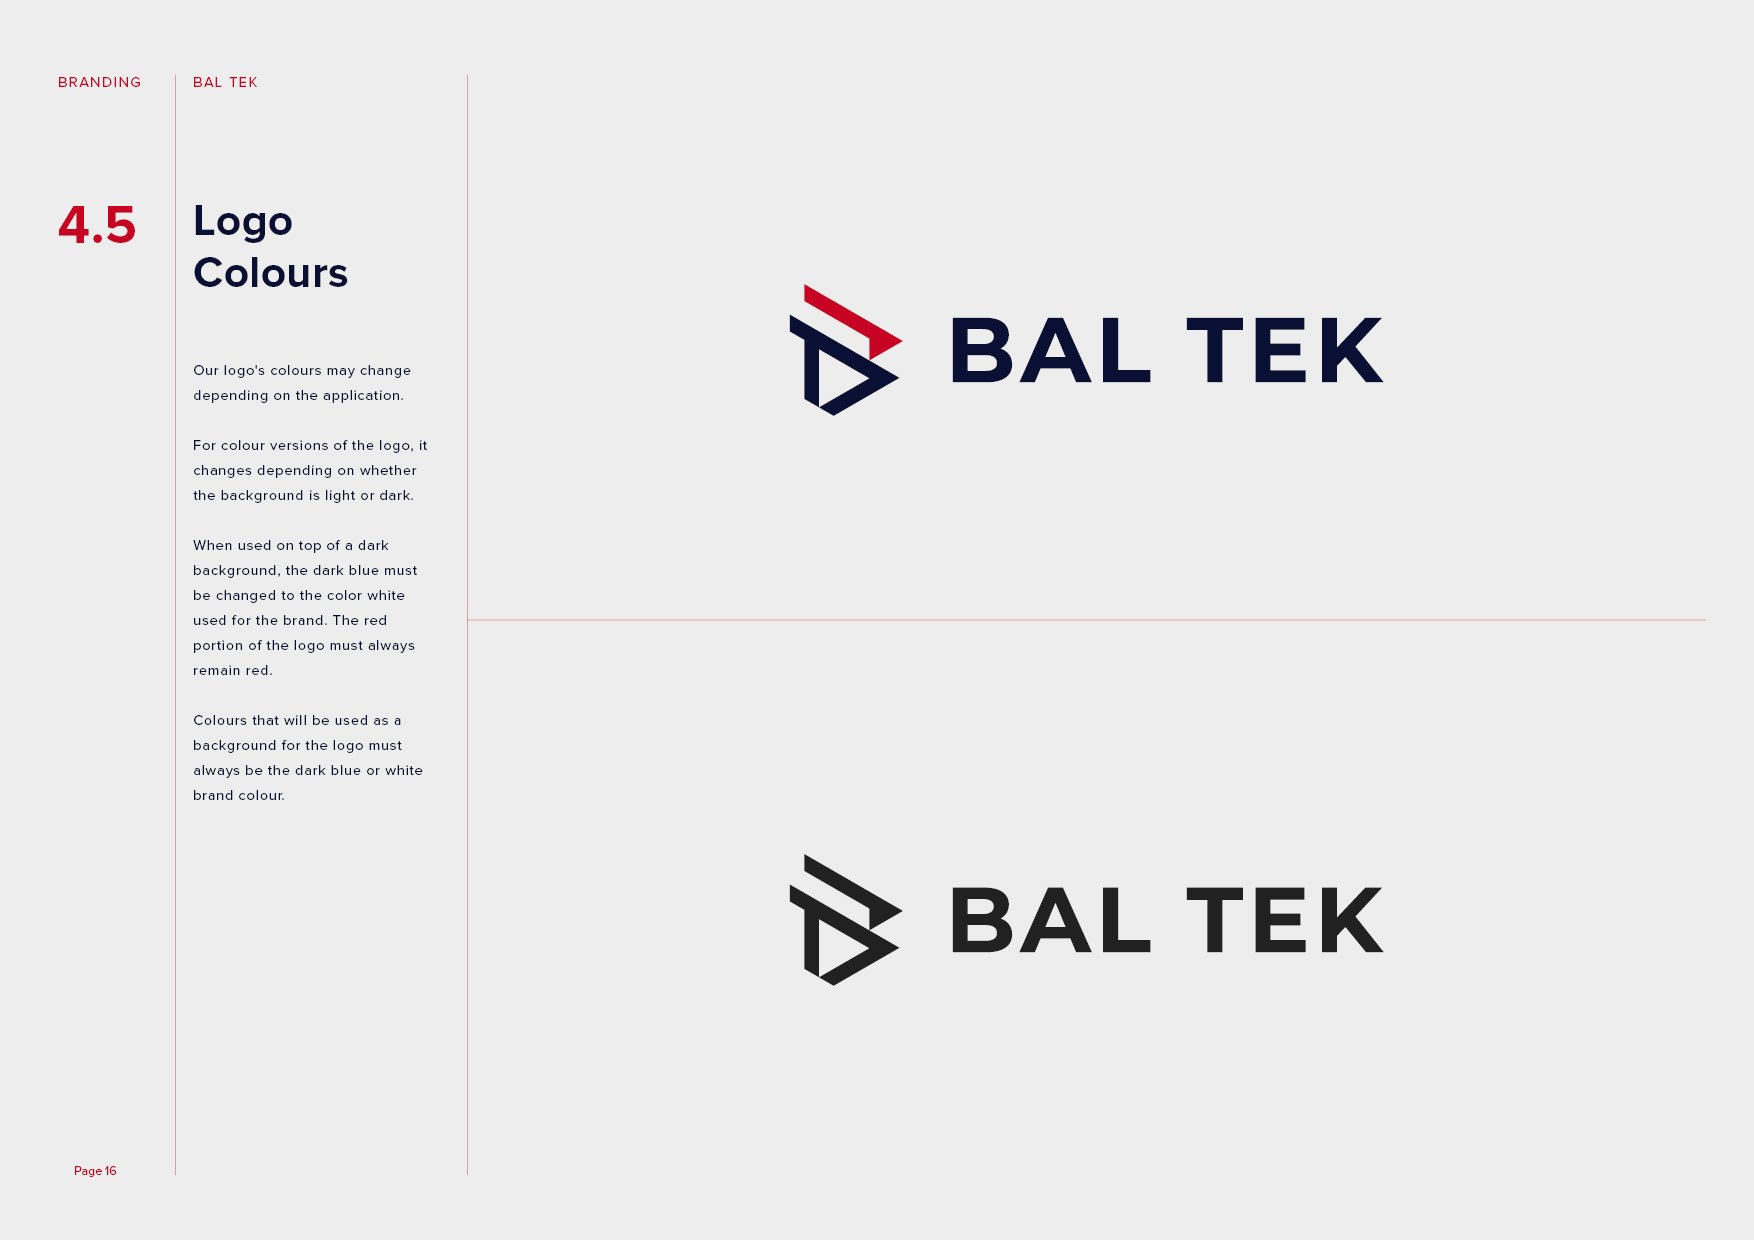 Bal Tek Brand Guidelines16.jpg